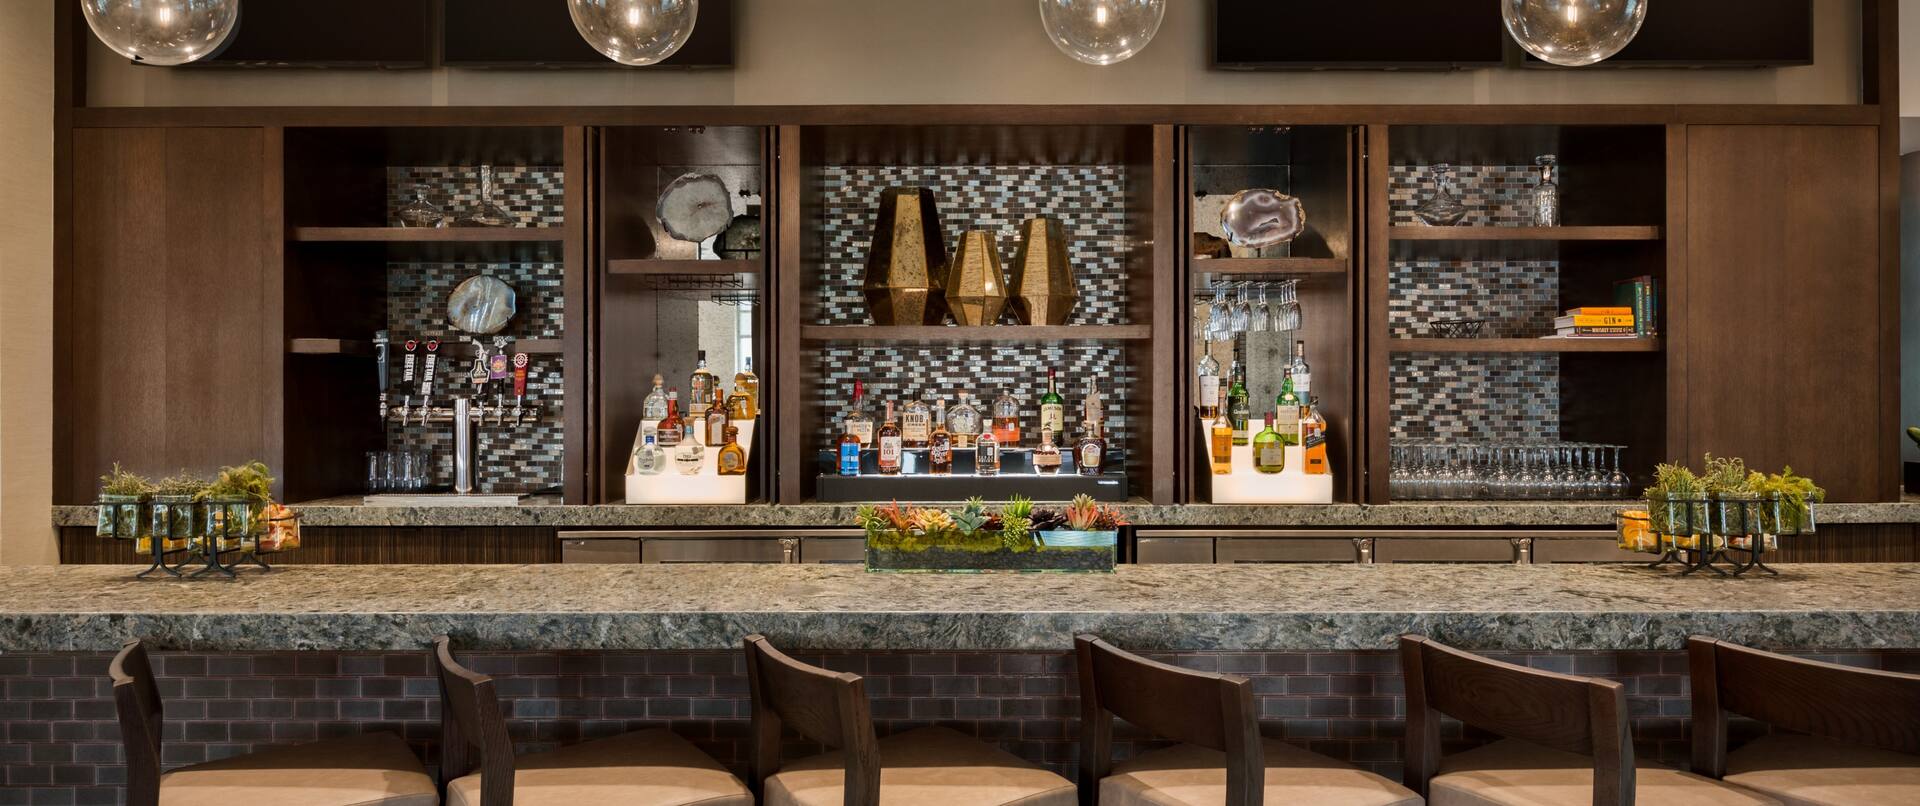 Brickstones Kitchen Bar